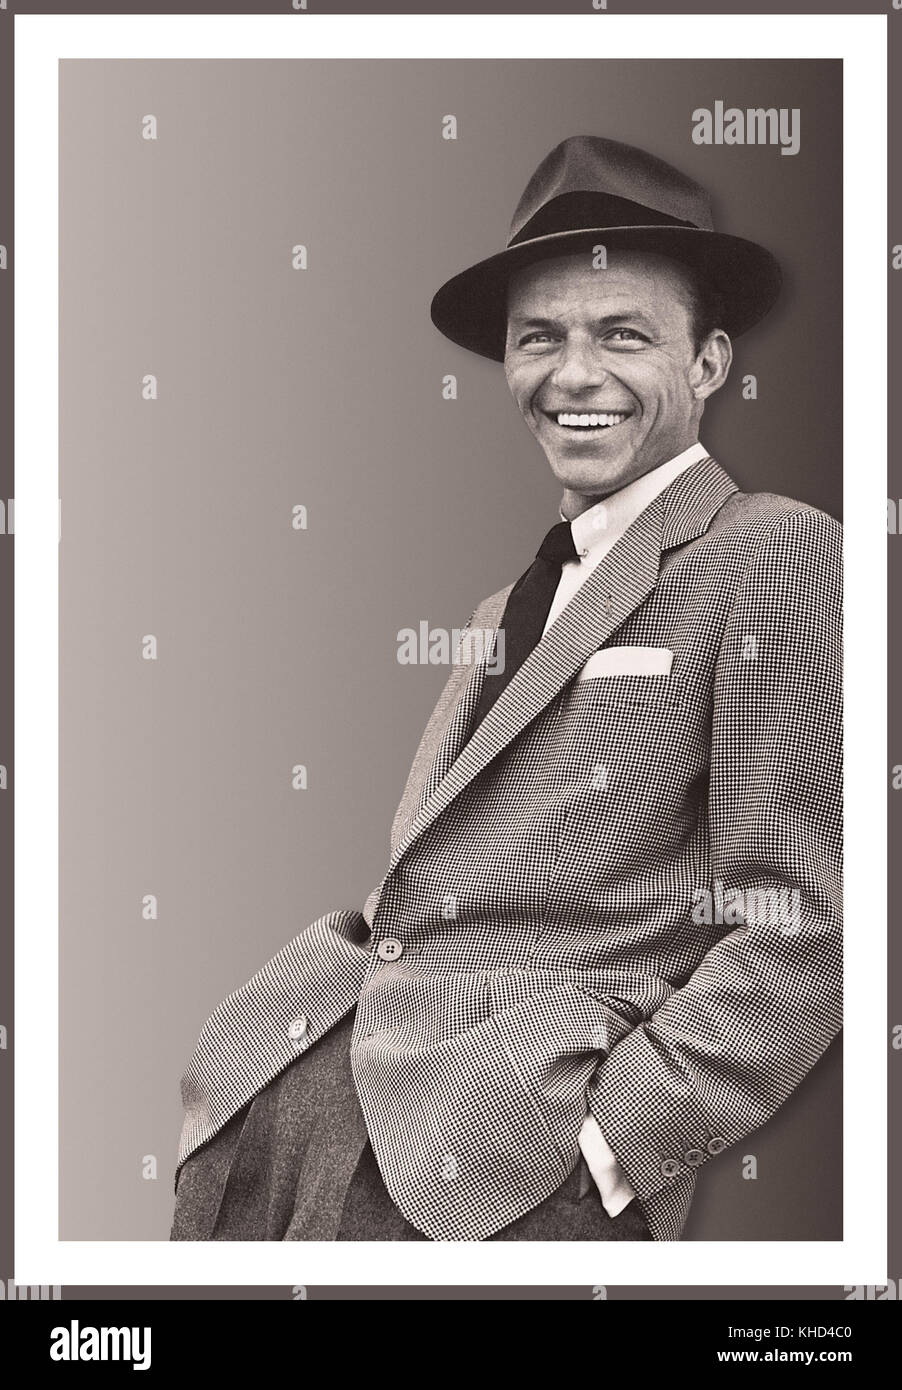 FRANK SINATRA RITRATTO INFORMALE RGB in tontano degli anni '50 in bianco e nero Francis Albert Sinatra il 12 dicembre 1915 – 14 maggio 1998 è stato un cantante, attore e produttore statunitense, uno dei più popolari e influenti artisti musicali del XX secolo. È uno degli artisti musicali più venduti di tutti i tempi, avendo venduto più di 150 milioni di dischi in tutto il mondo. Nato a Hoboken, New Jersey, da immigrati italiani, Sinatra ha iniziato la sua carriera musicale nell'era dello swing con i leader del banding Harry James e Tommy Dorsey. Foto Stock